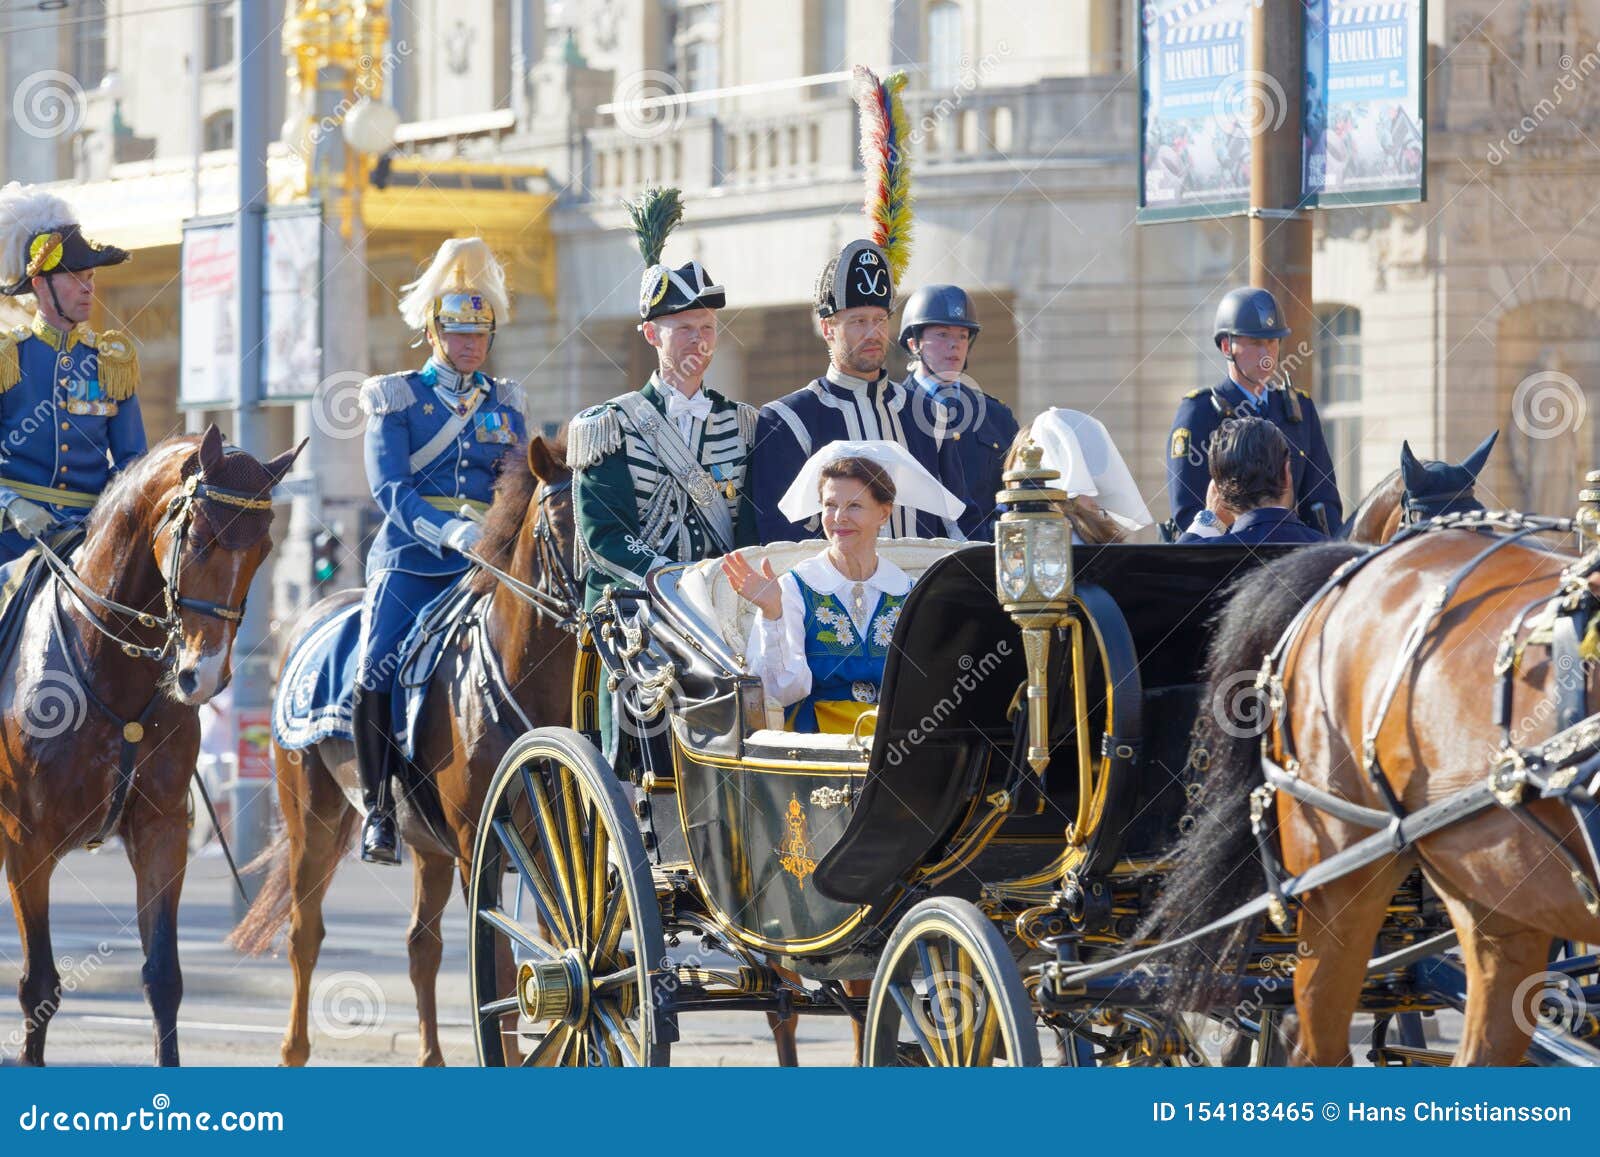 Stockholm-monarchia *** ORIGINAL POSTCARD *** Regina Silvia-Bernadotte-nobiltà-Royal 